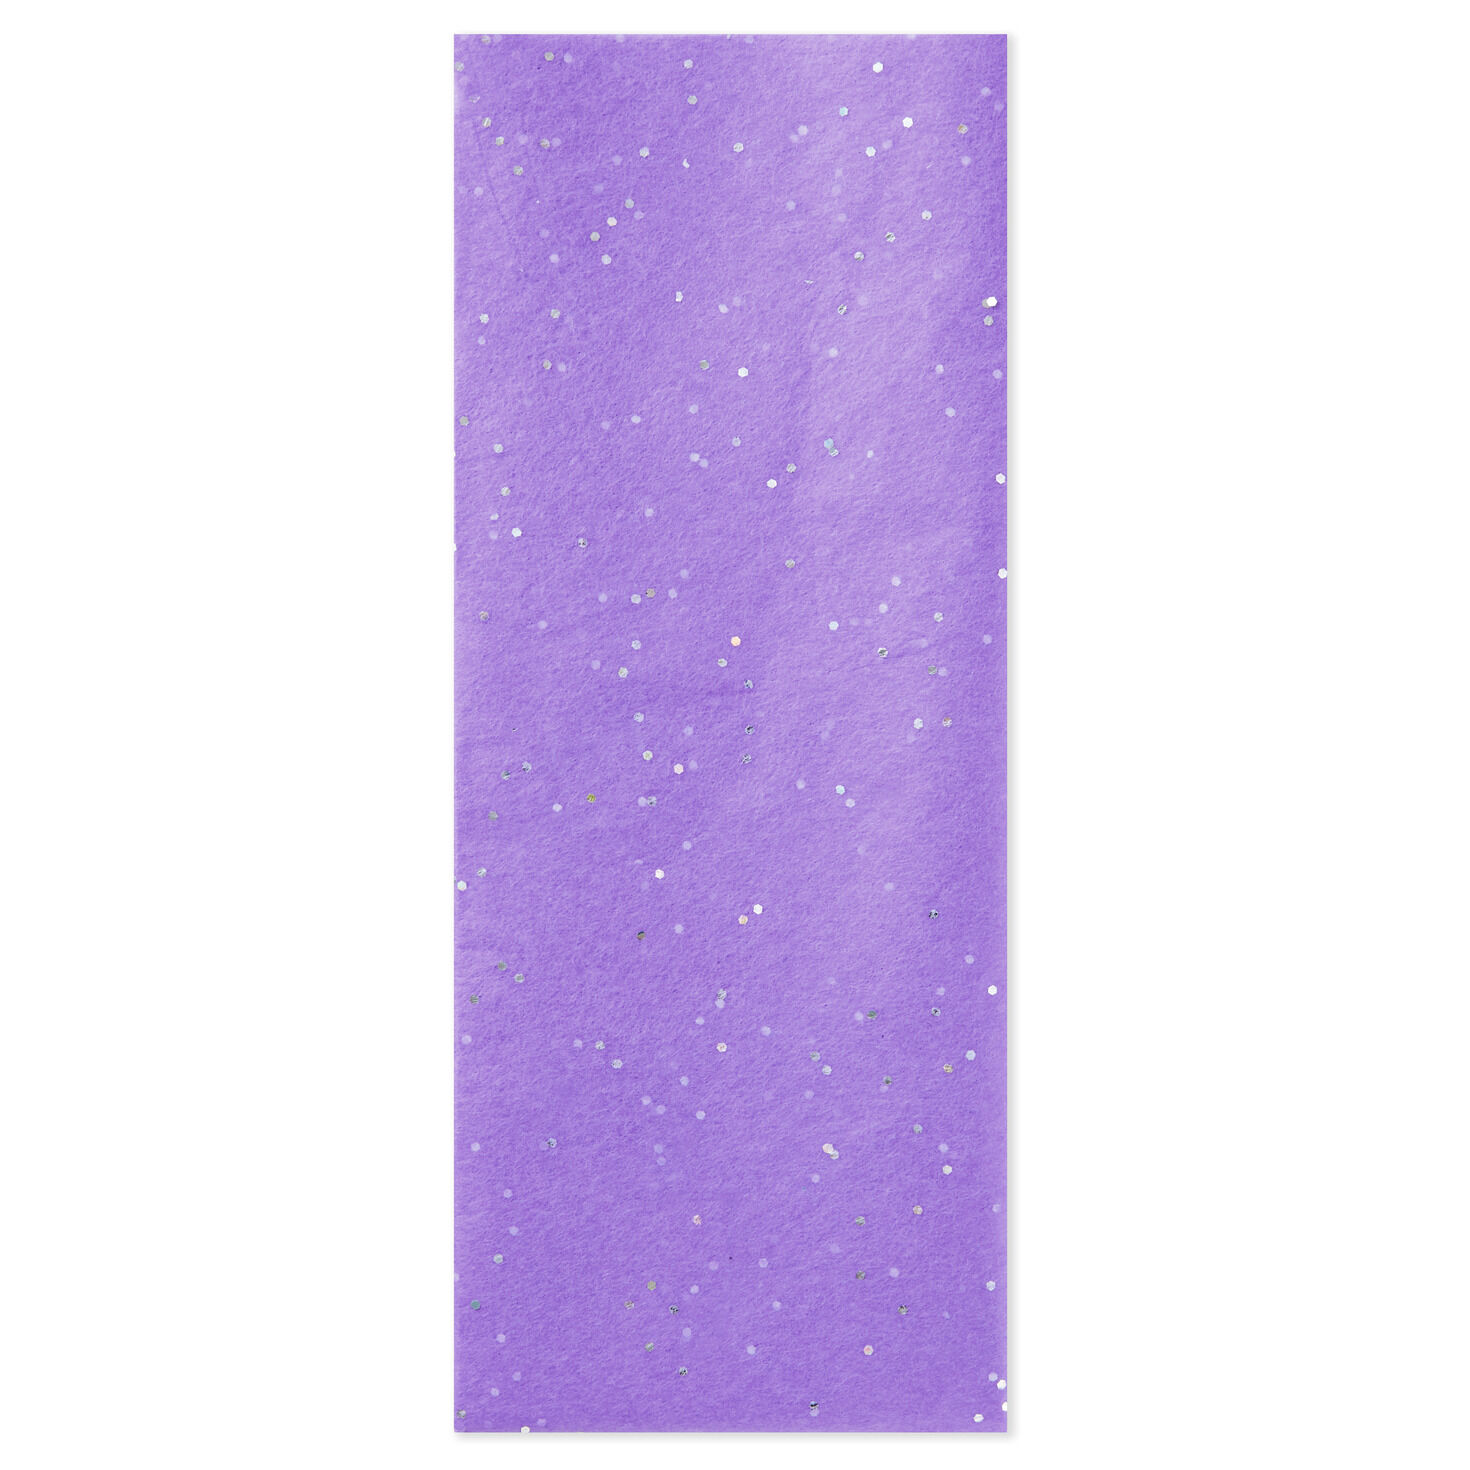 Amethyst Purple With Gems Tissue Paper, 6 sheets - Tissue - Hallmark